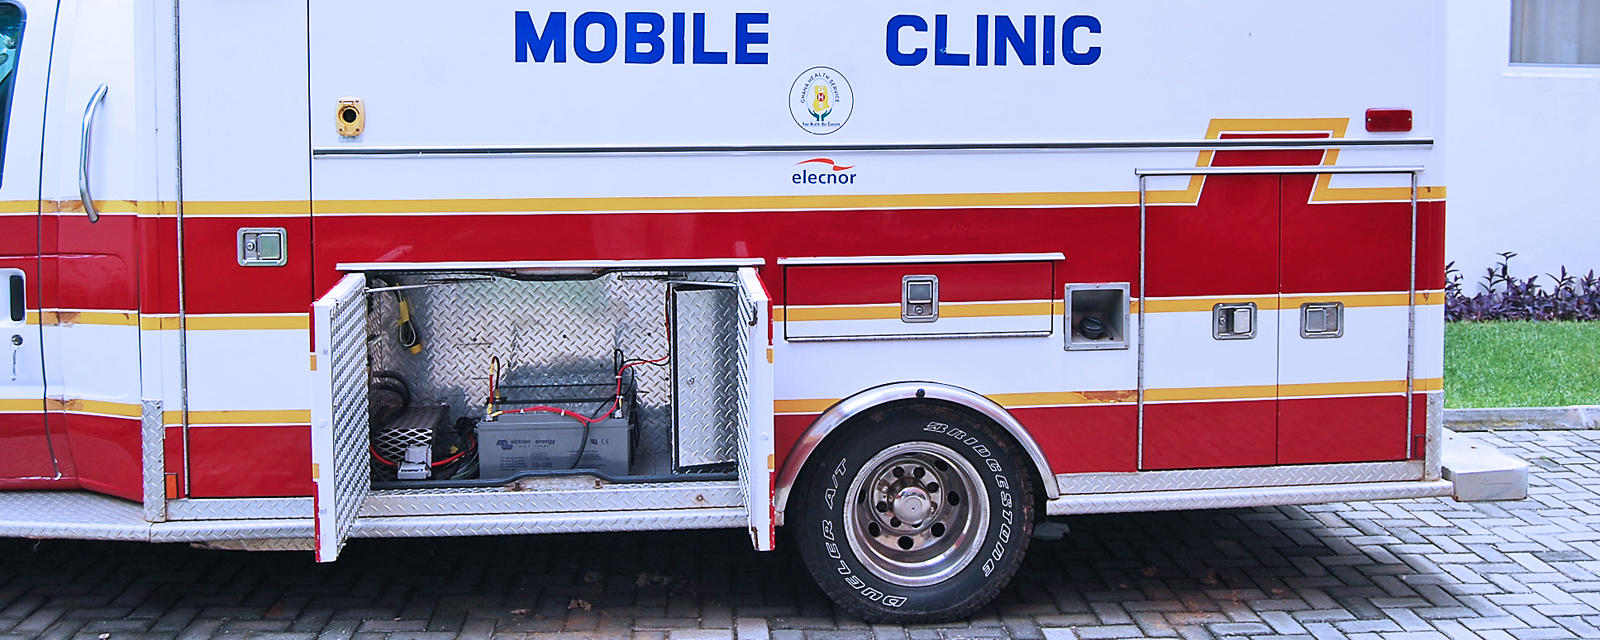 Mobiele kliniek Ghana